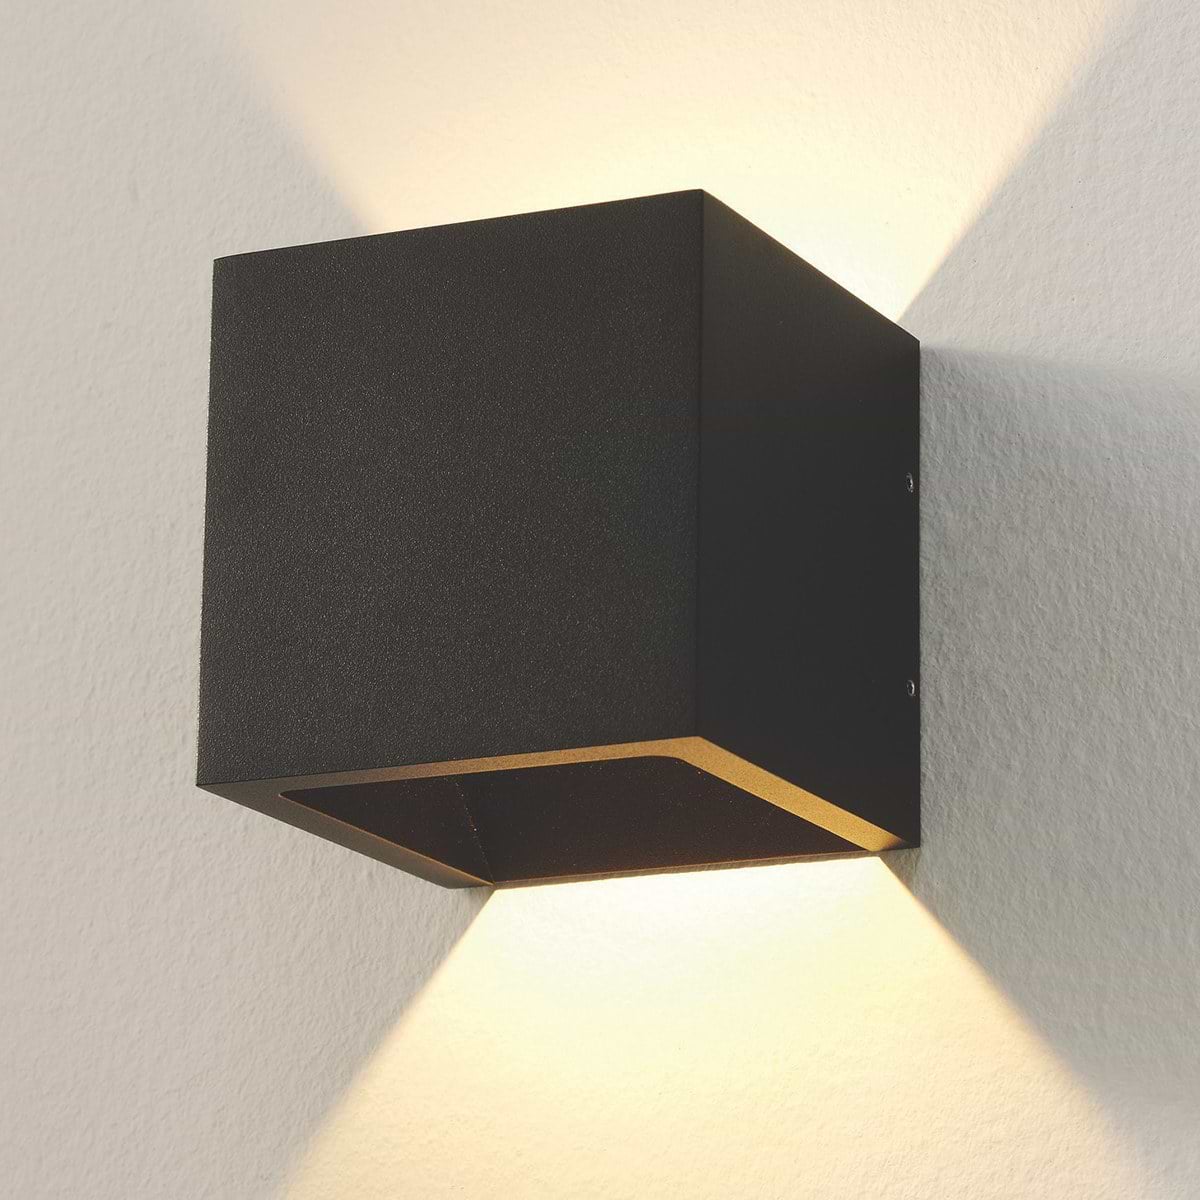 Badkamer wandlamp zwart "Cube" 10x10x10cm LED, ART DELIGHT - WLCUBEZW -